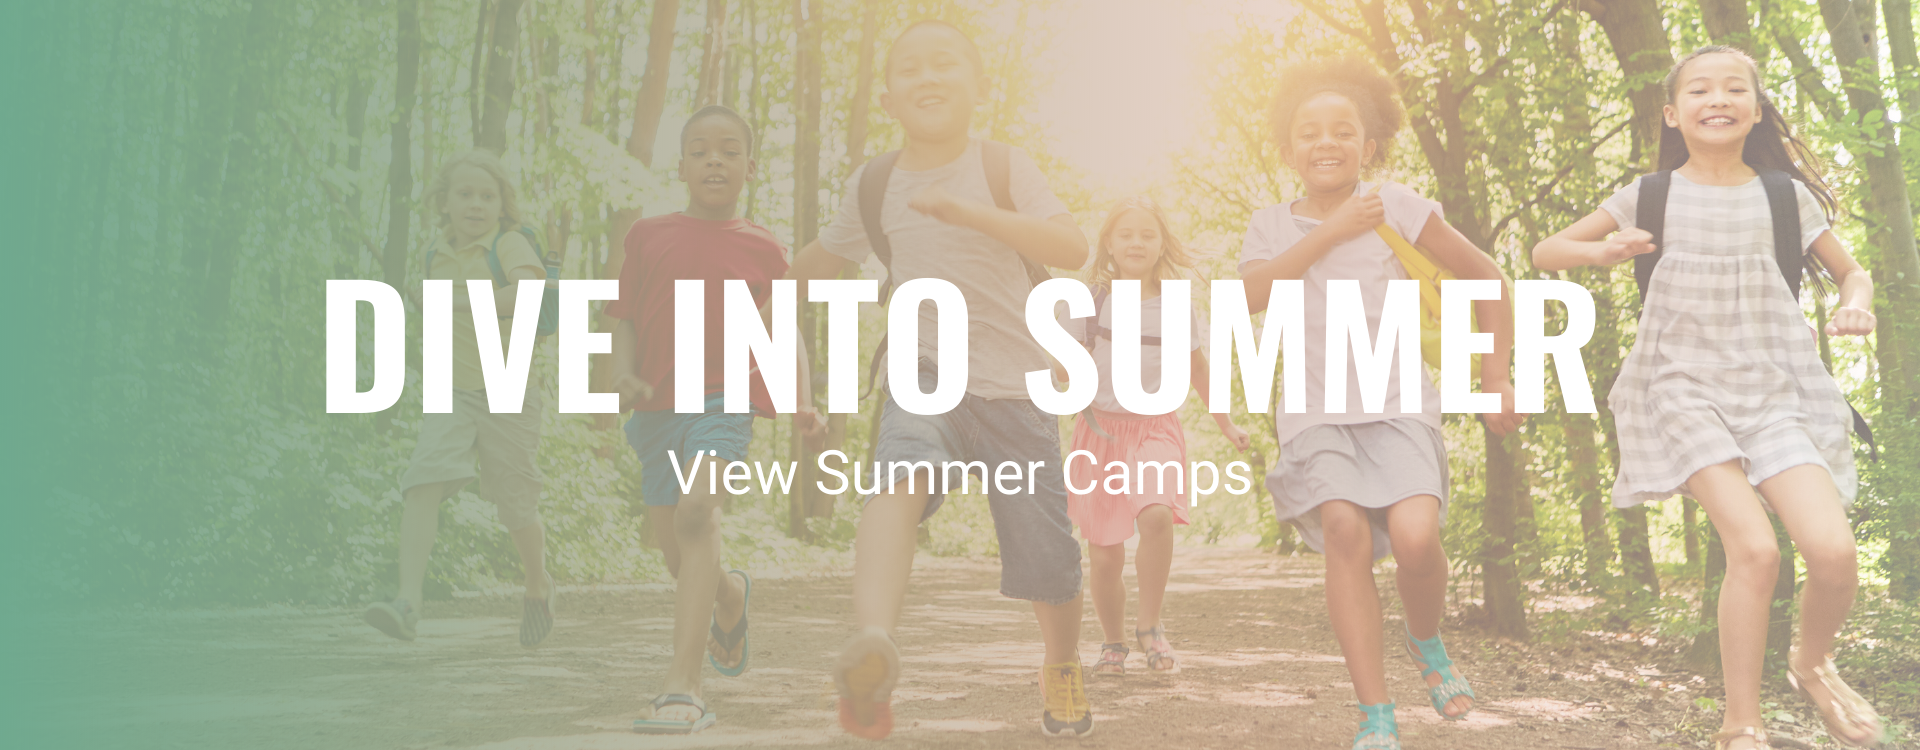 NPU Summer Camps